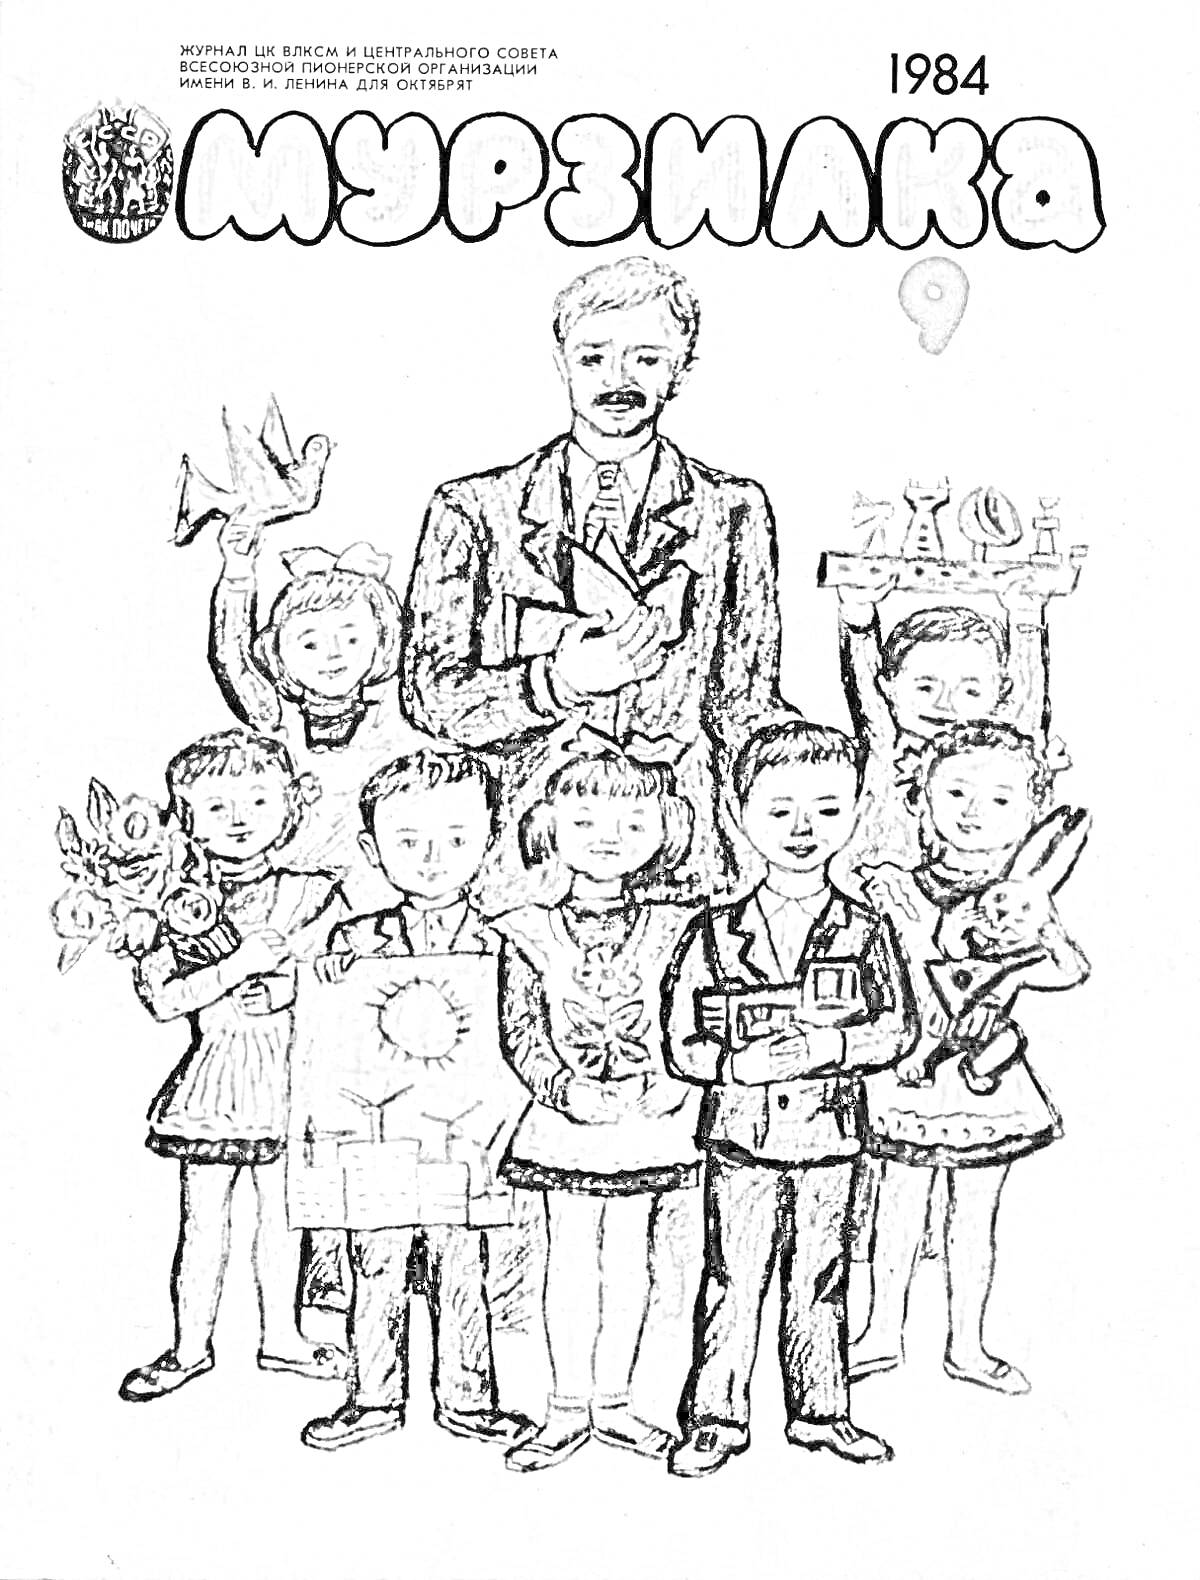 Раскраска Мужчина и пятеро детей с цветами, игрушками и книгами на фоне обложки журнала